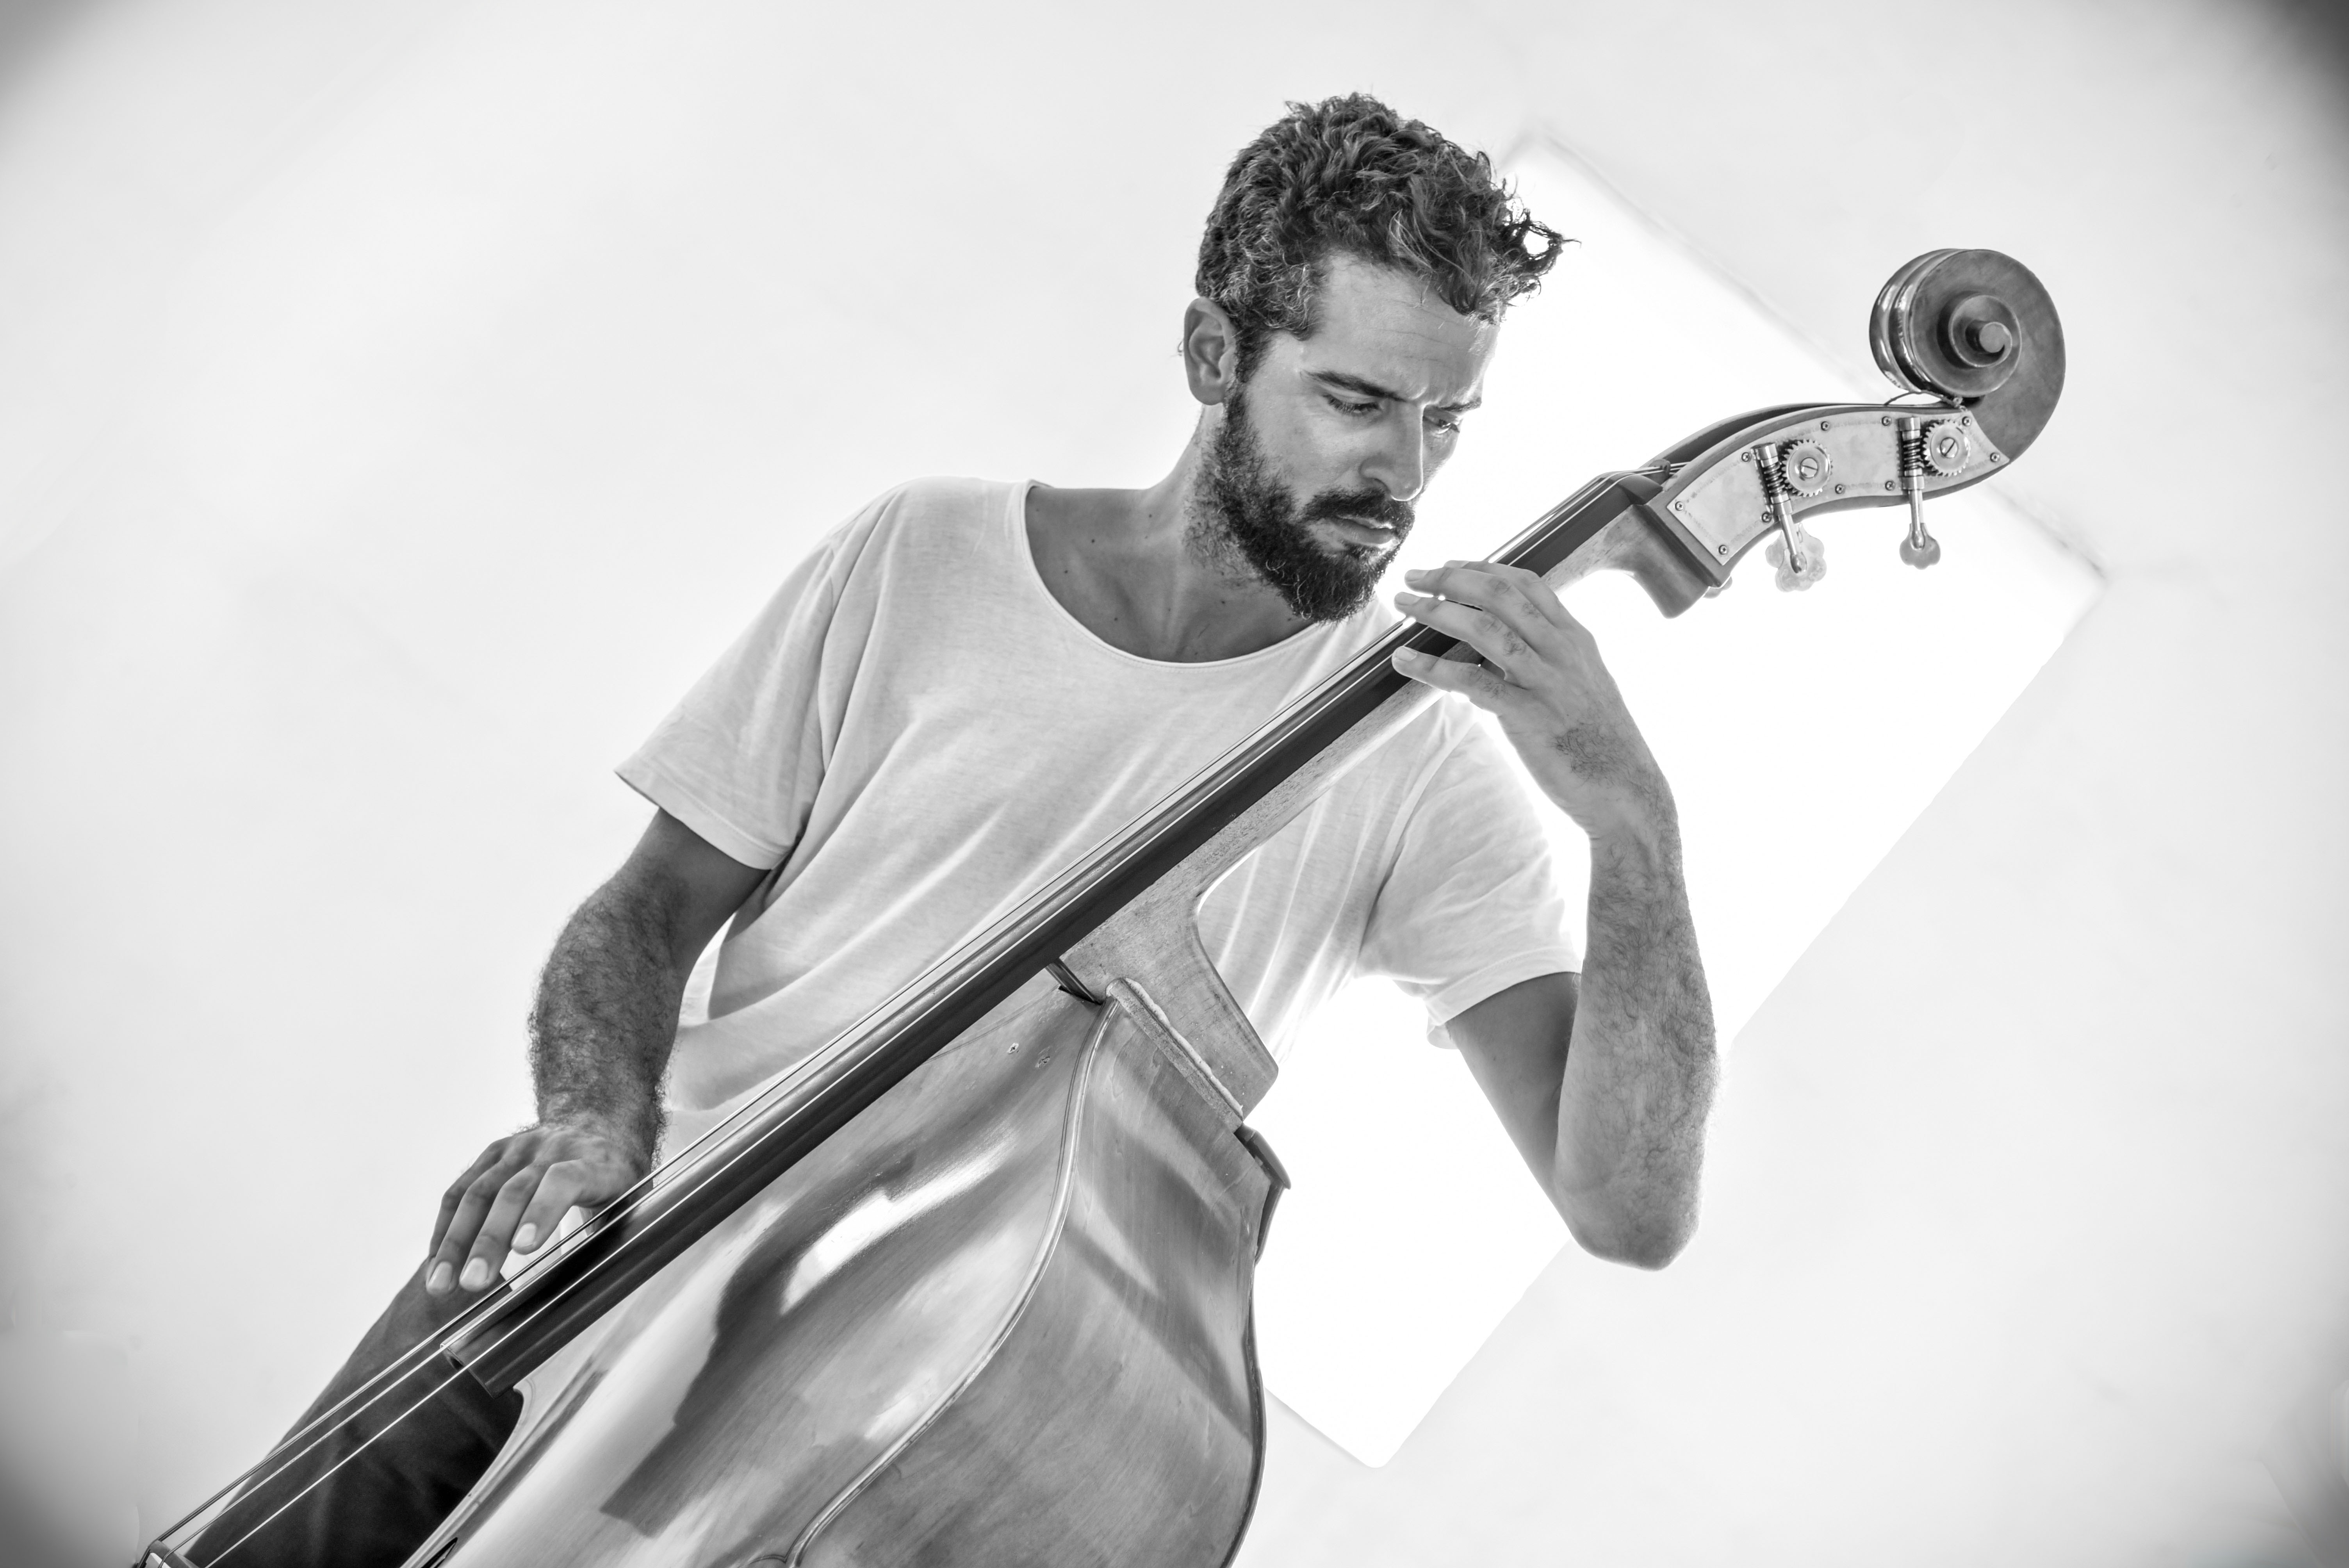 Πέτρος Κλαμπάνης. Ο περιζήτητος Έλληνας τζαζίστας. Από τη Νέα Υόρκη στην Πάτρα για το φεστιβάλ Jazz & Πράξεις 2018